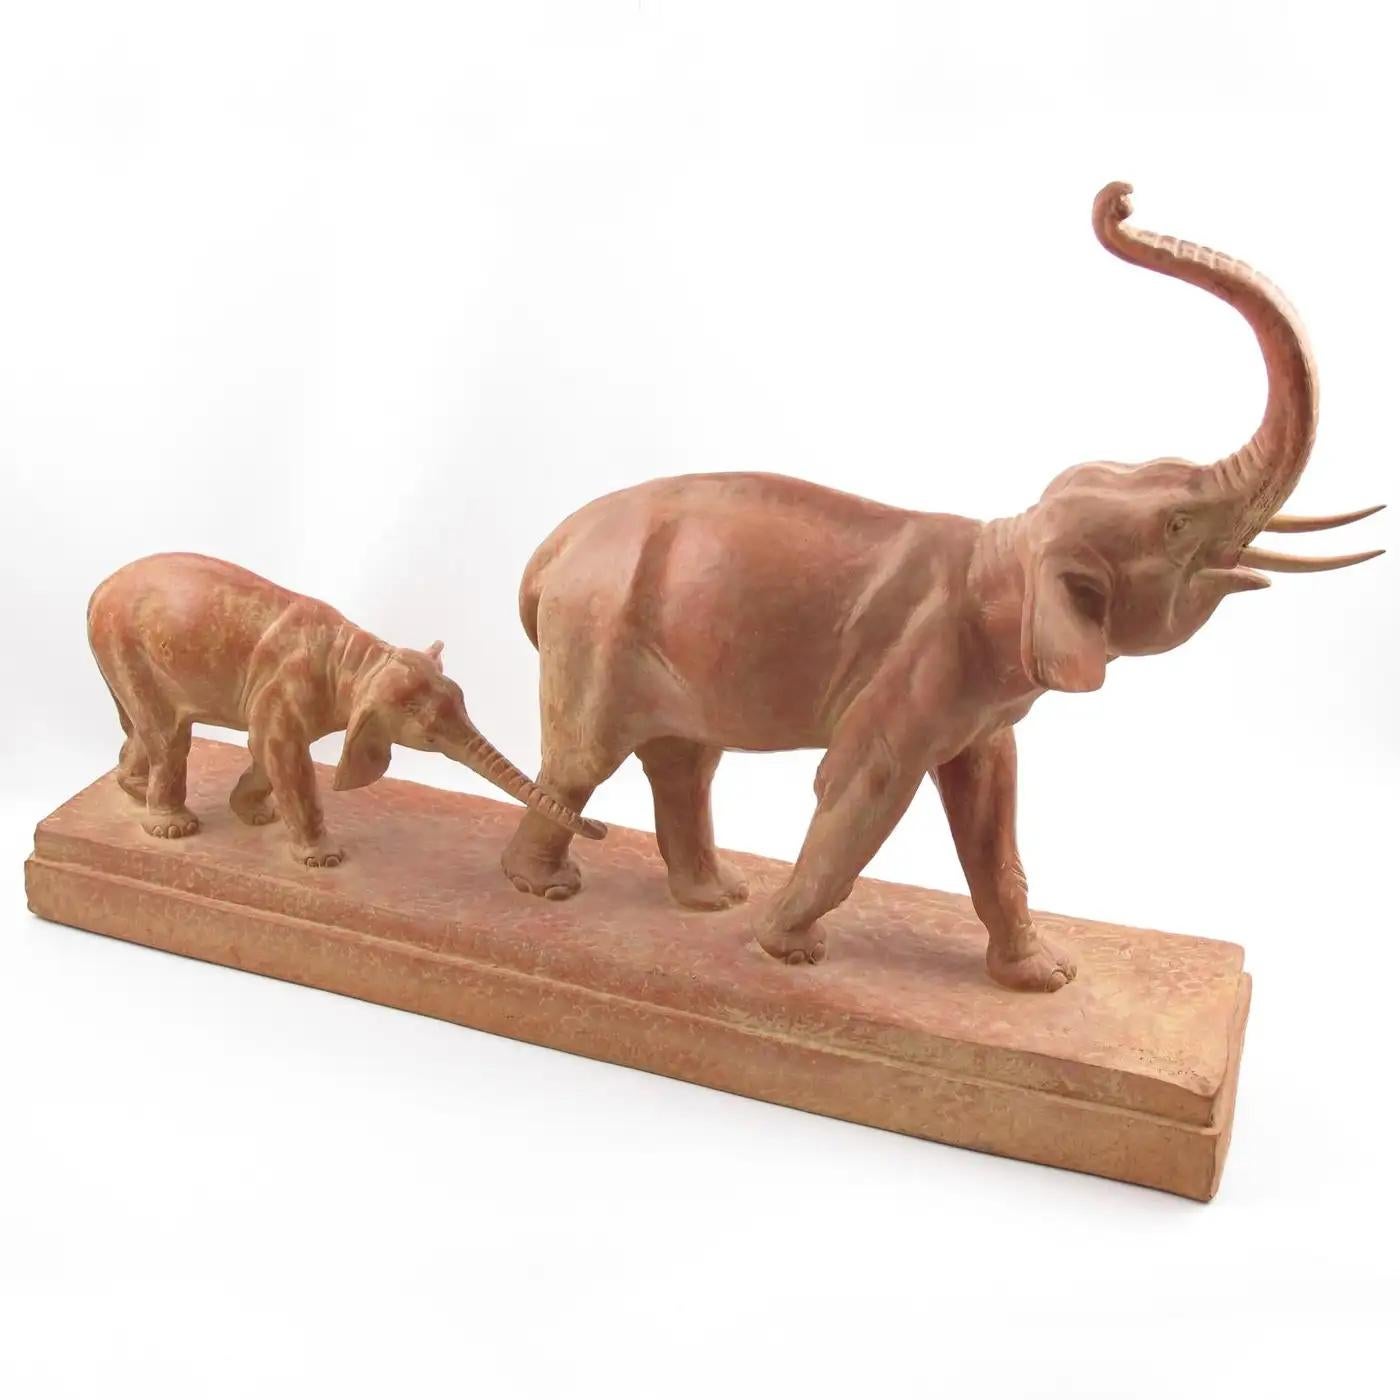 Demetre Chiparus (1888-1950) entwarf diese prächtige Terrakotta-Skulptur im Art-déco-Stil. Das Kunstwerk zeigt einen braun-rot patinierten, schreitenden Art-Déco-Elefanten auf einem großen Sockel. Das Elefantenweibchen trompetet, gefolgt von ihrem